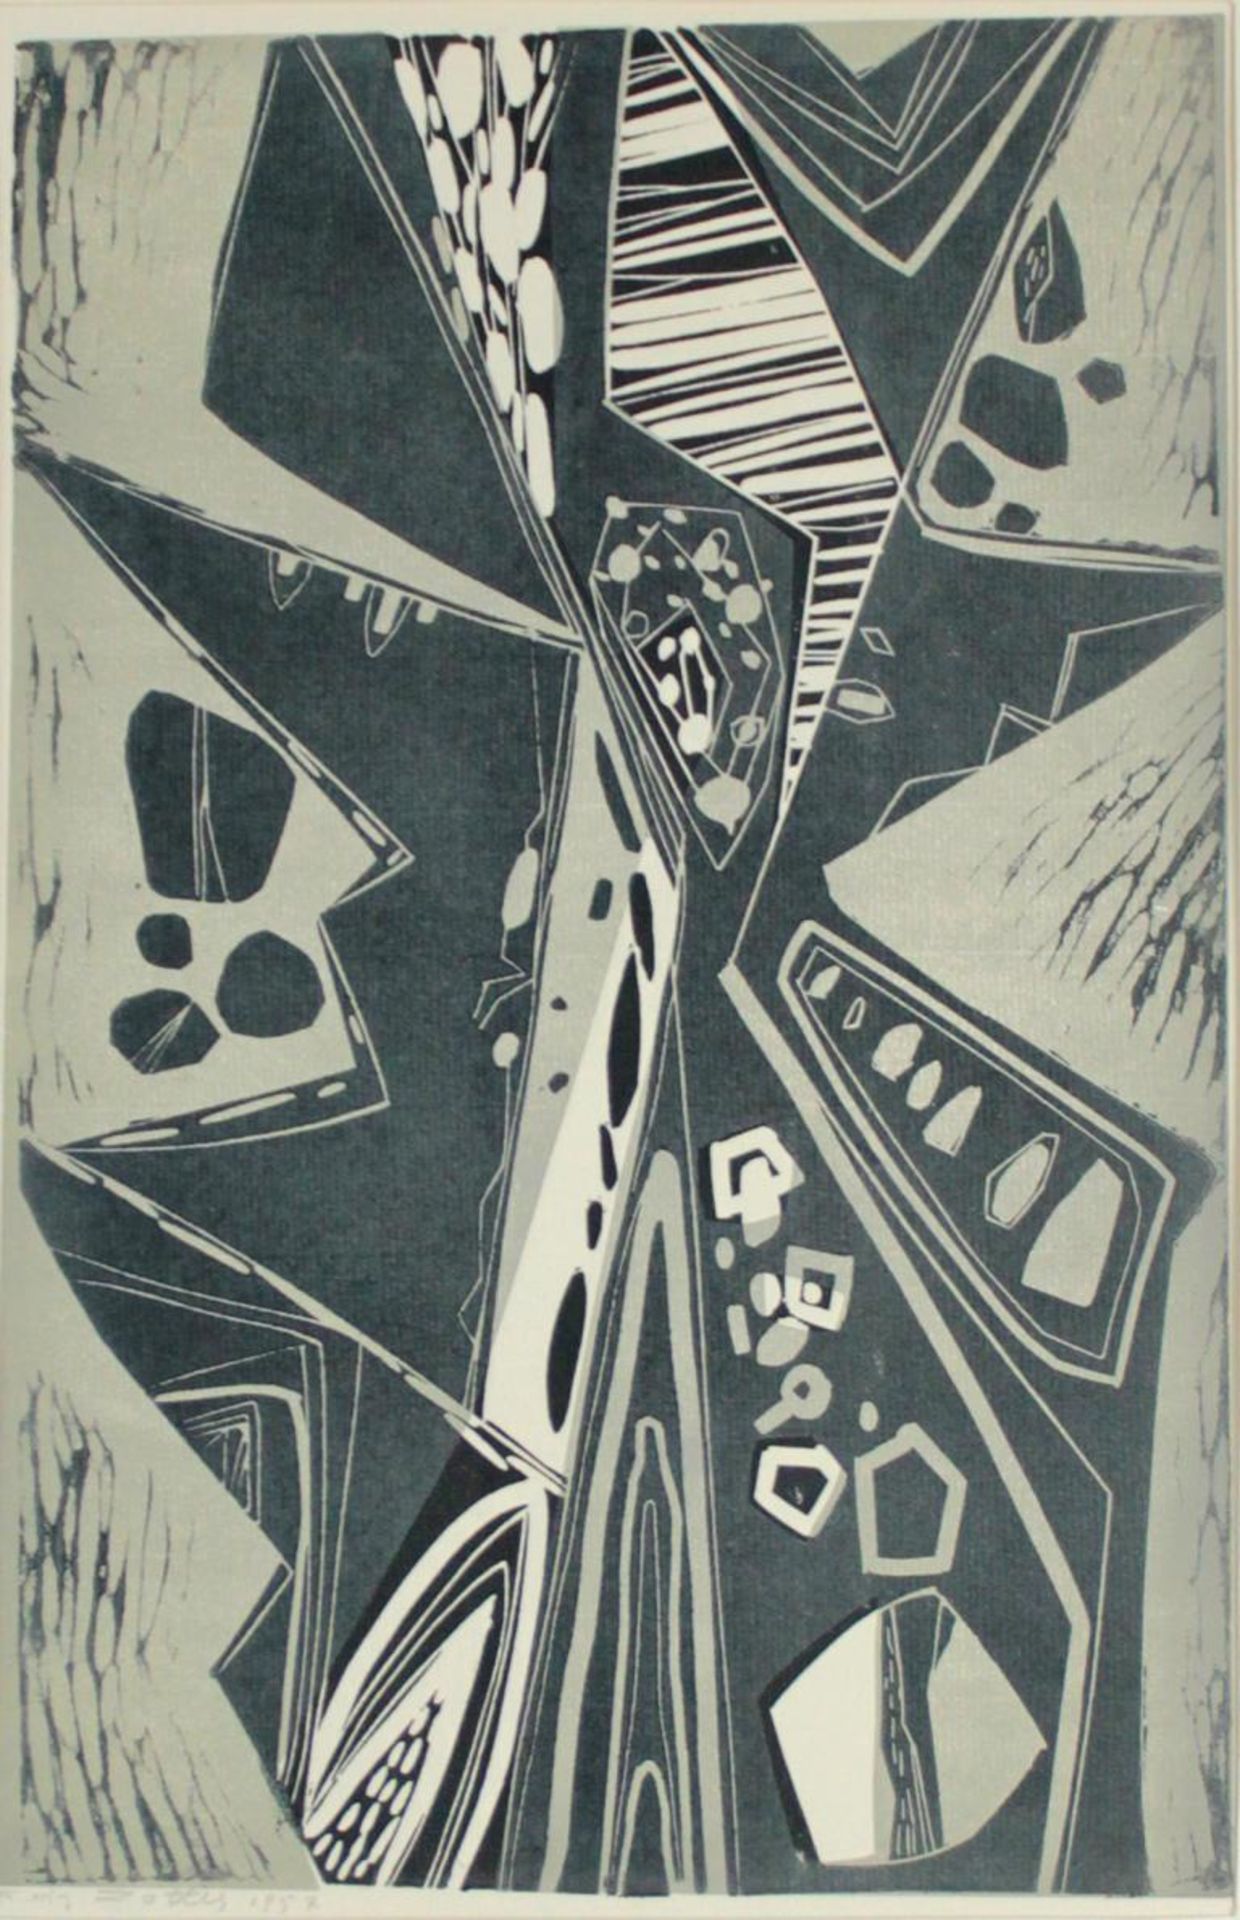  Feri Zotter(1923 - 1987)"Baum"1957Linolschnitt auf Papier; signiert und datiert